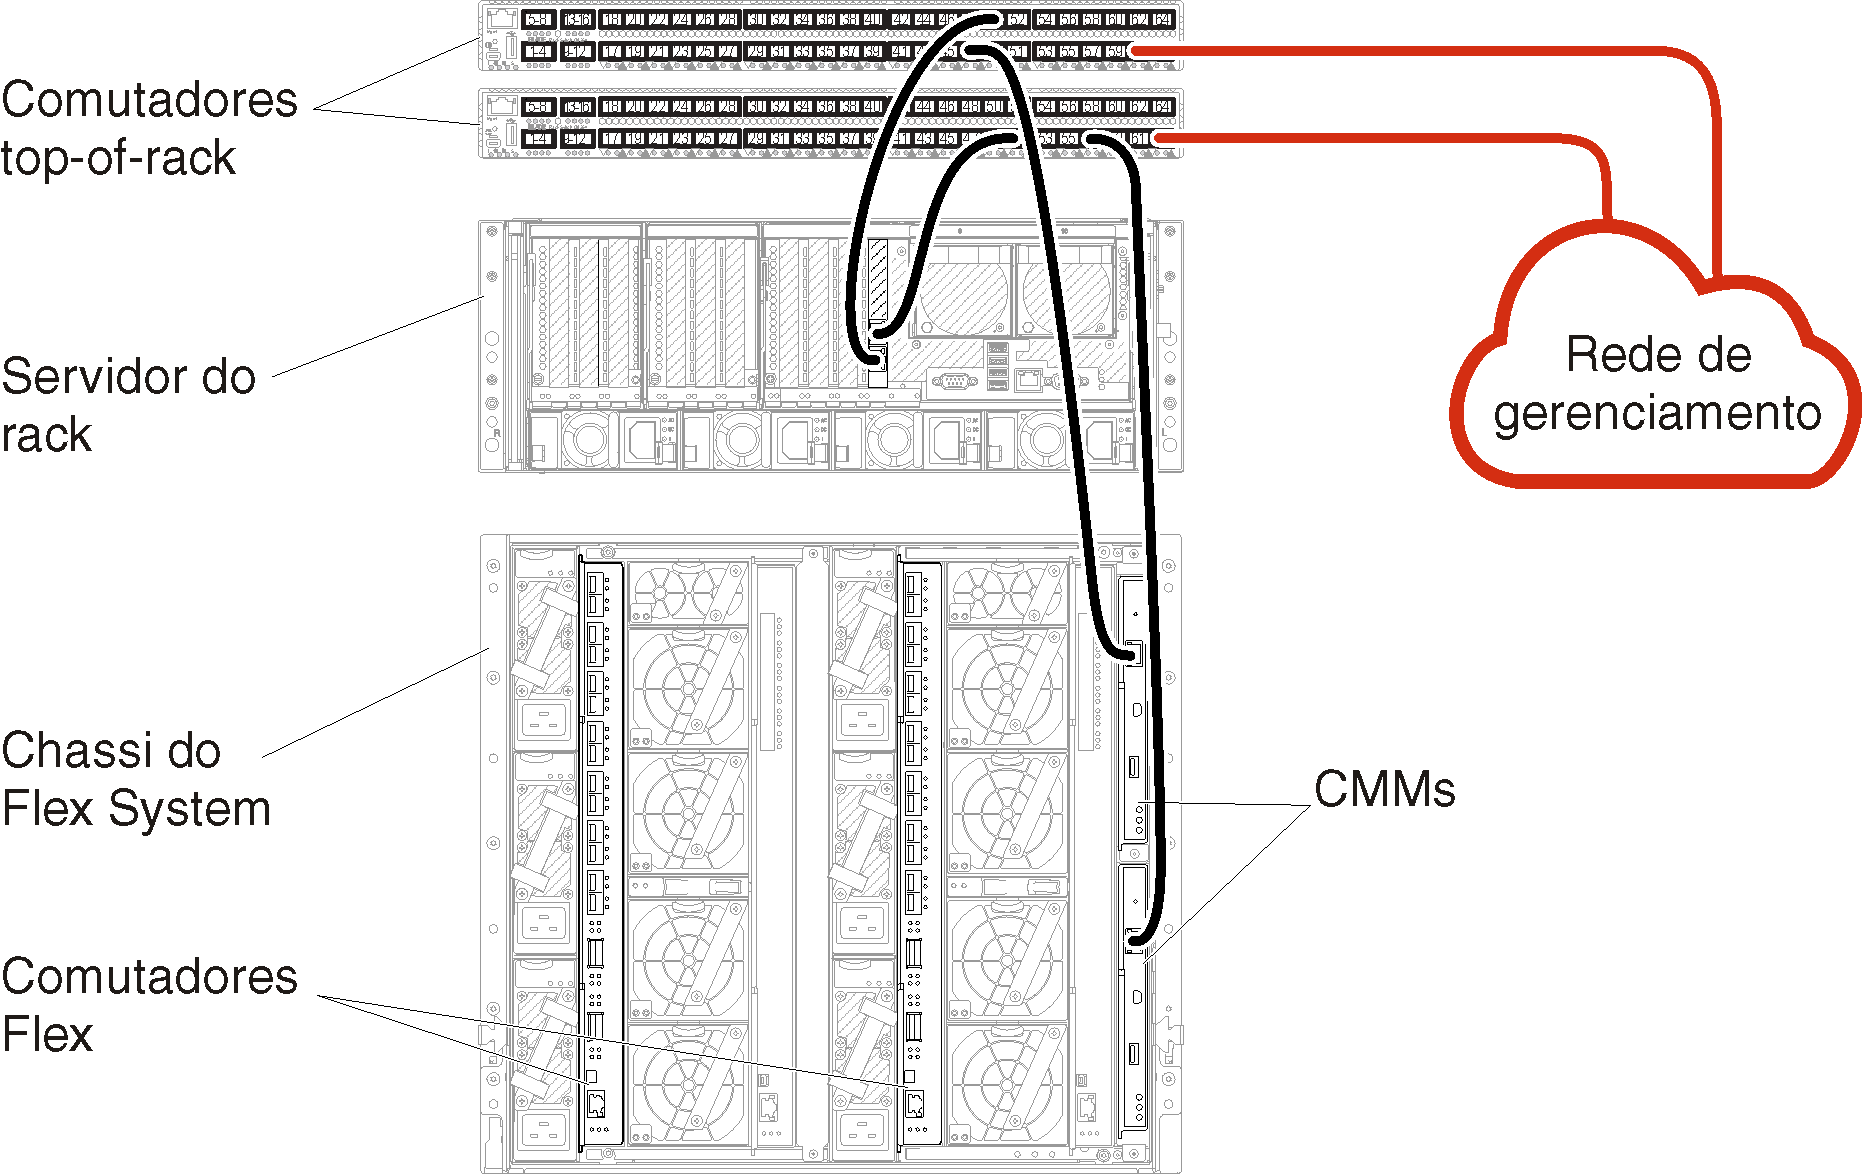 Ilustra cabeamento do chassi e servidores de rack para comutadores top-of-rack para uma rede somente de gerenciamento